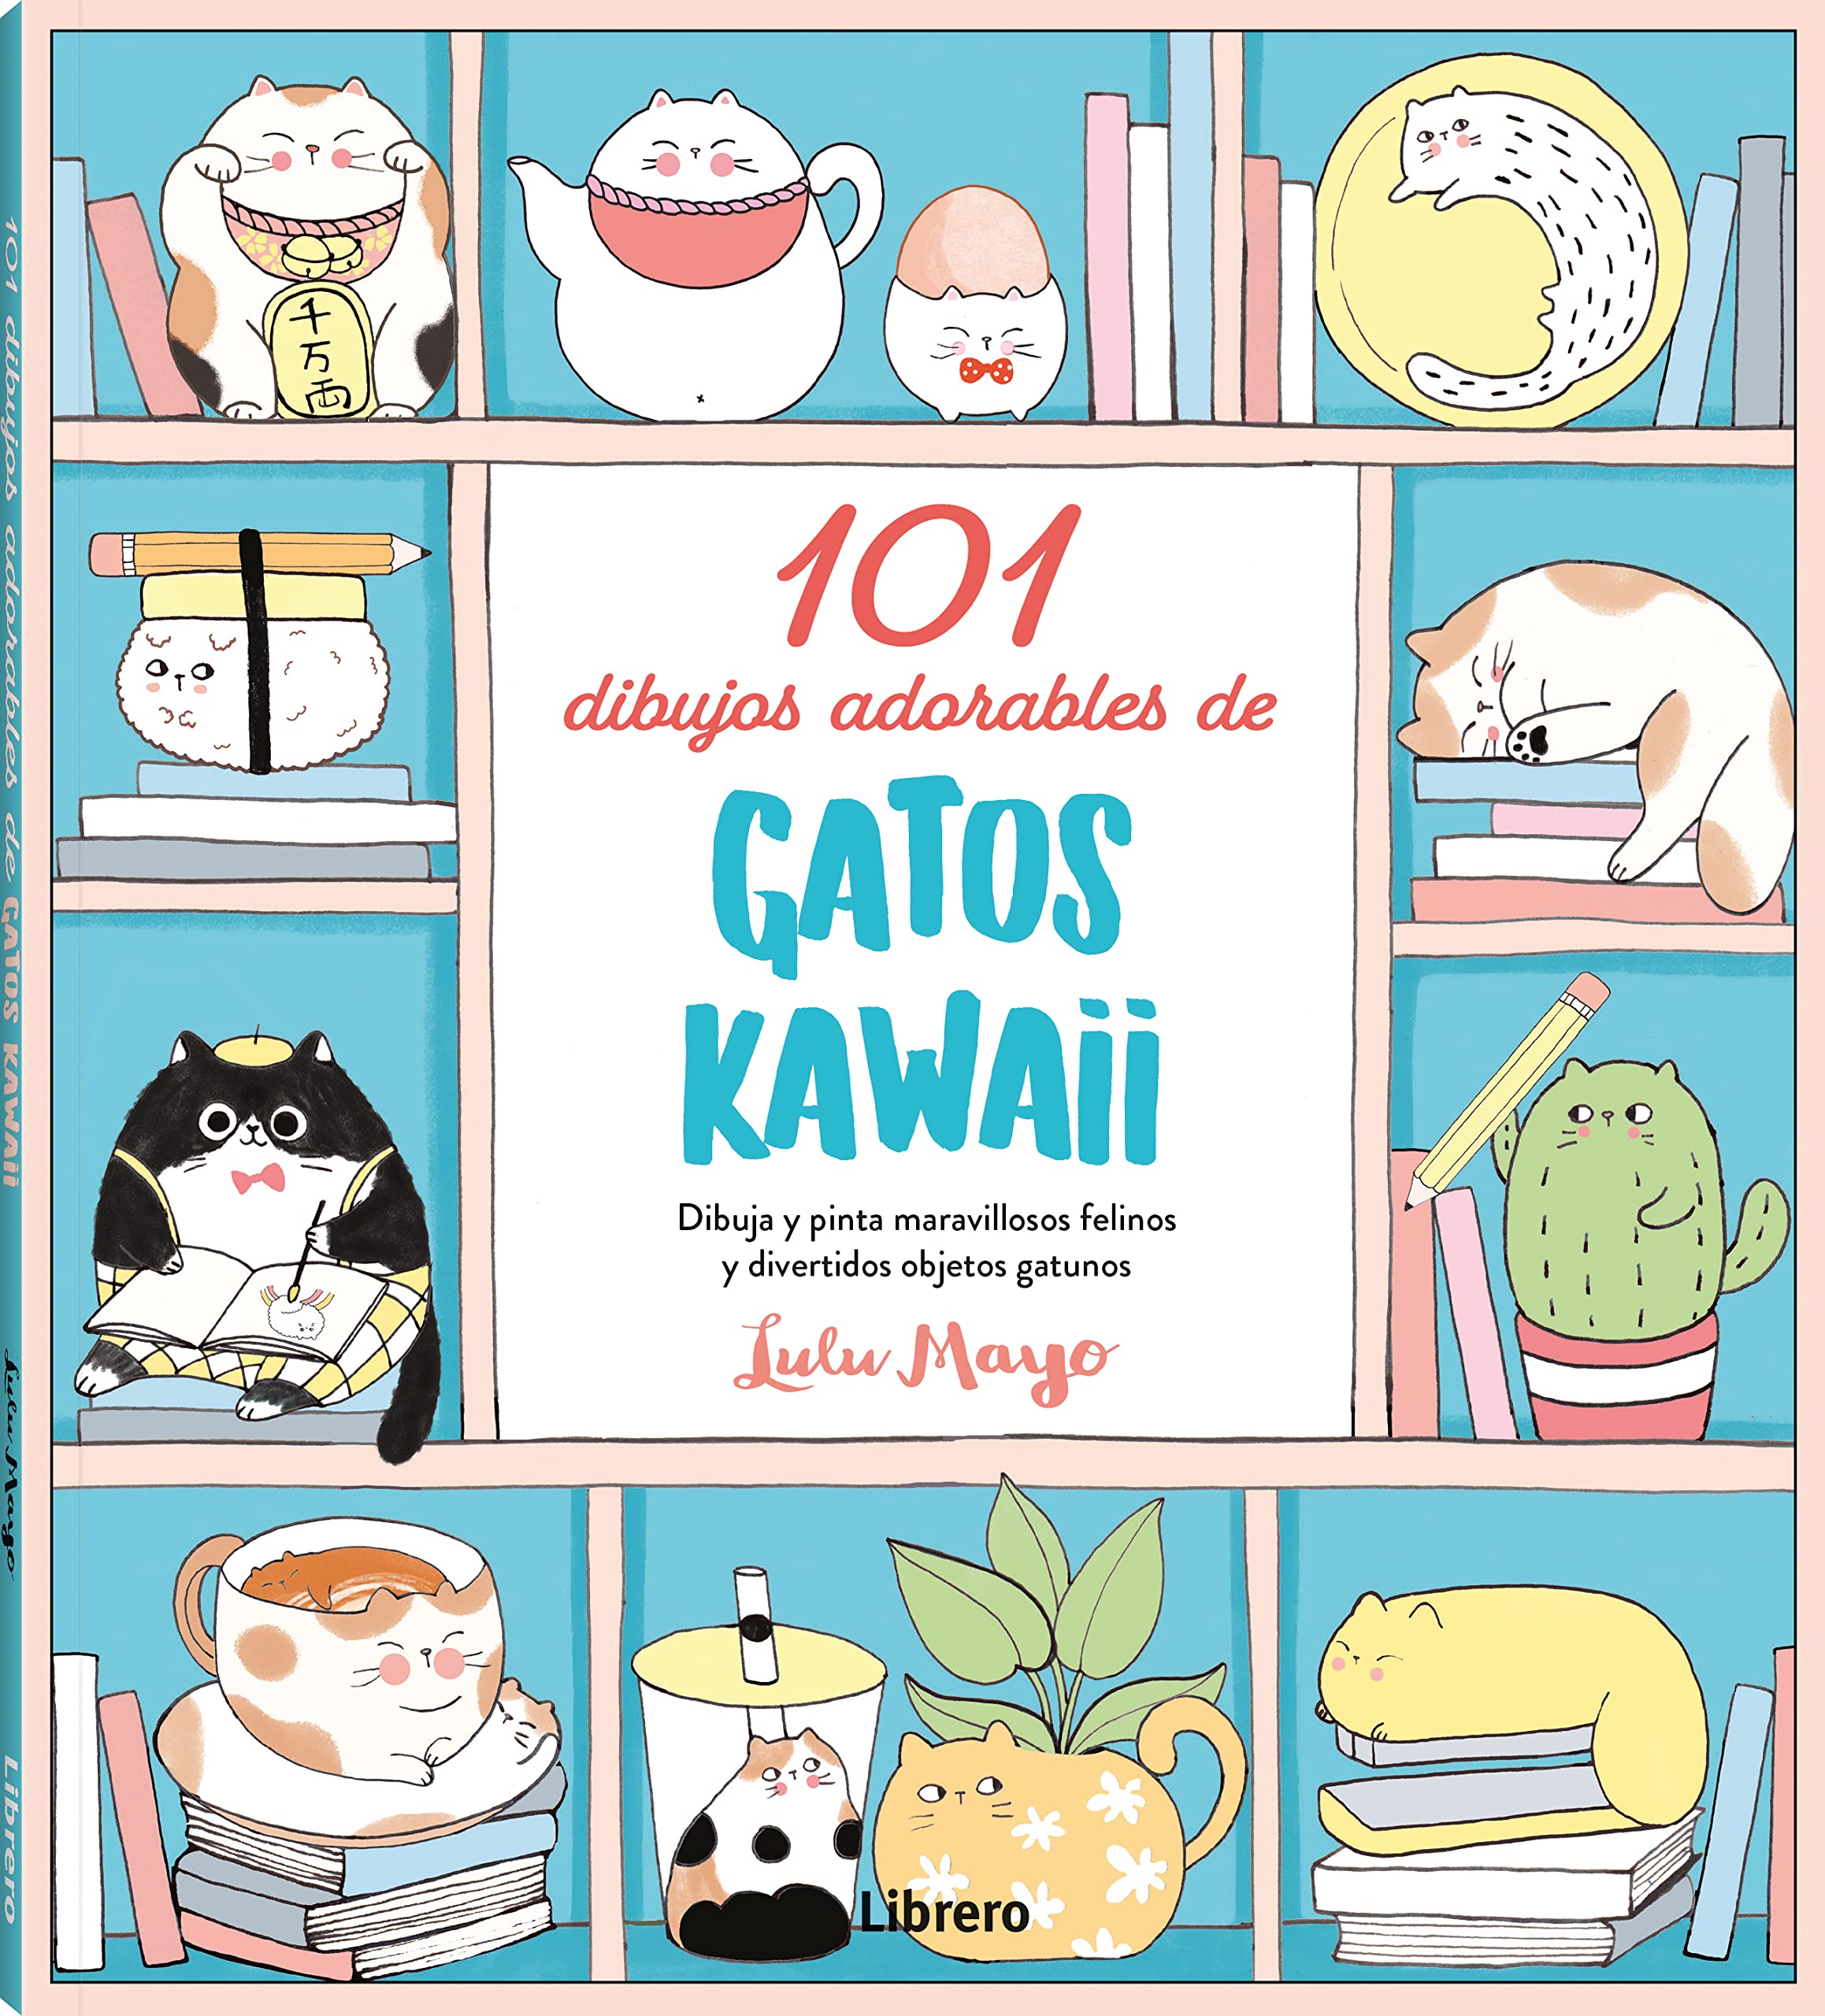 101 Dibujos adorables de Gatos Kawaii